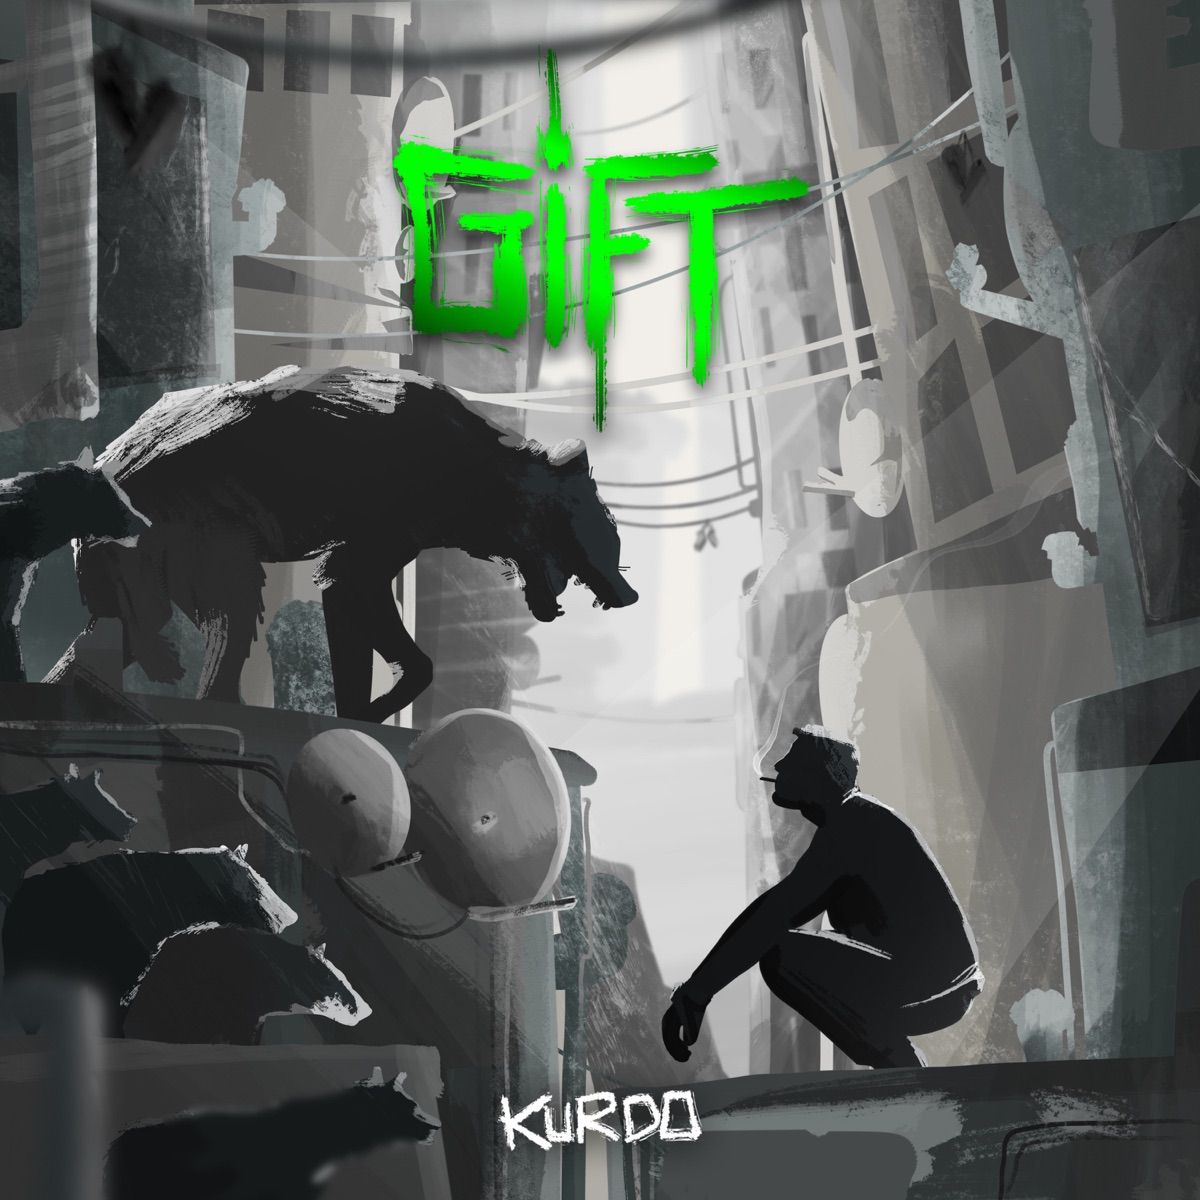 Nike Kappe umgekehrt - Single by Kurdo on Apple Music